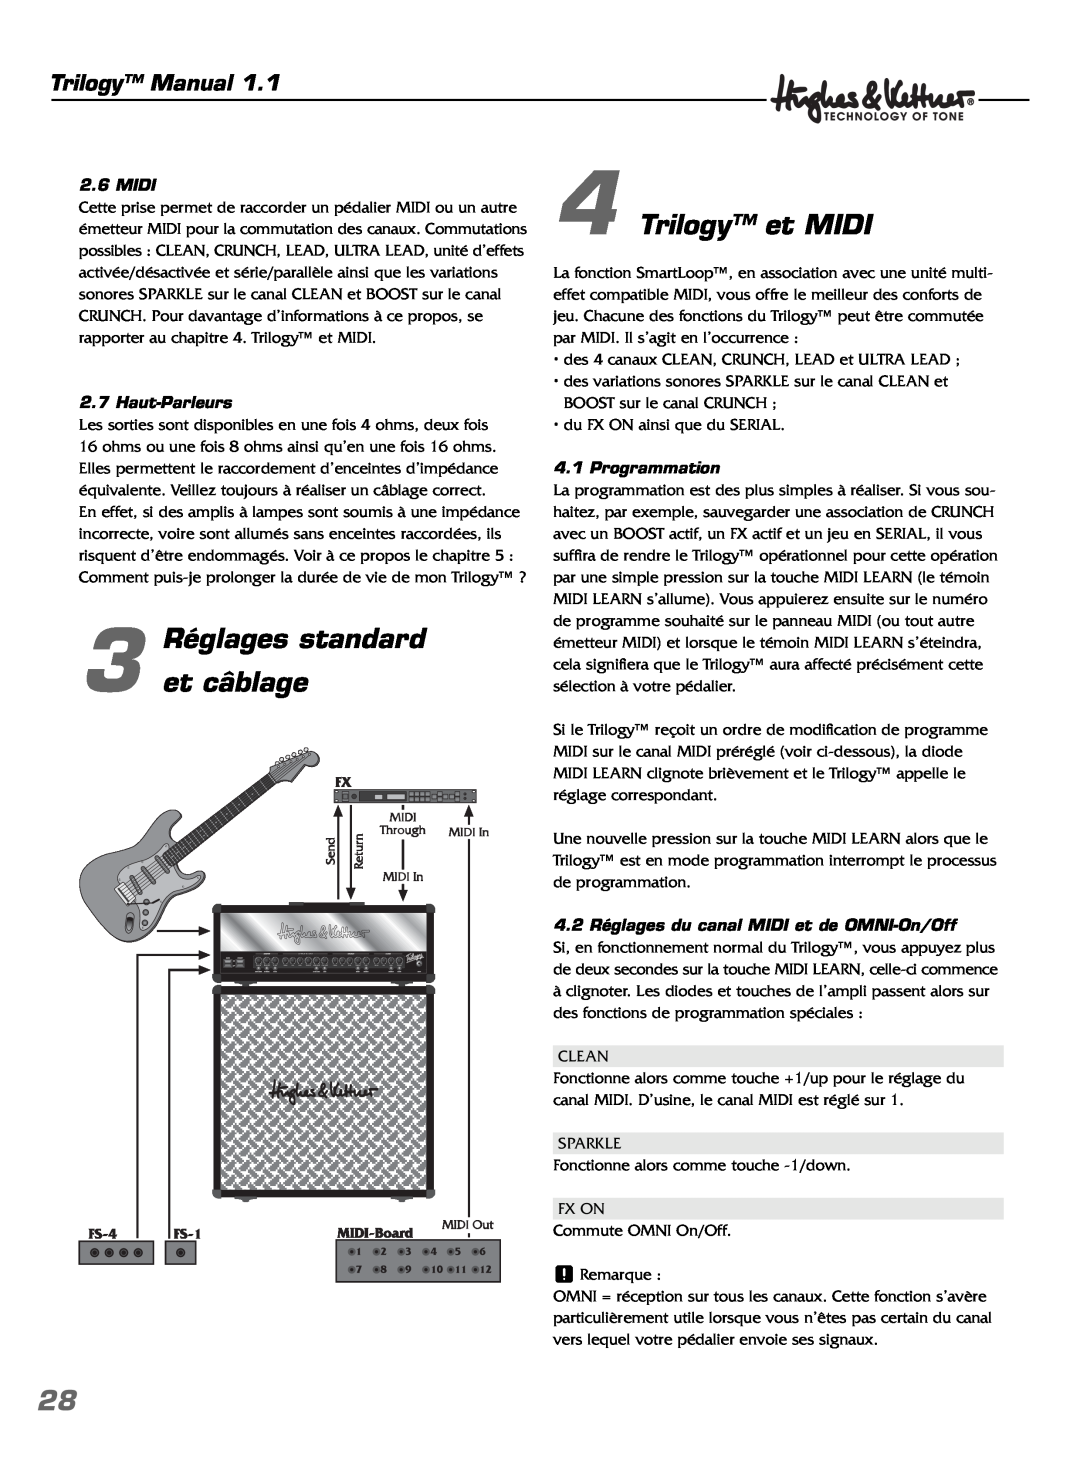 Hughes & Kettner TrilogyTM manual Réglages standard 3 et câblage, Trilogy et MIDI, Trilogy Manual, Midi, Haut-Parleurs 